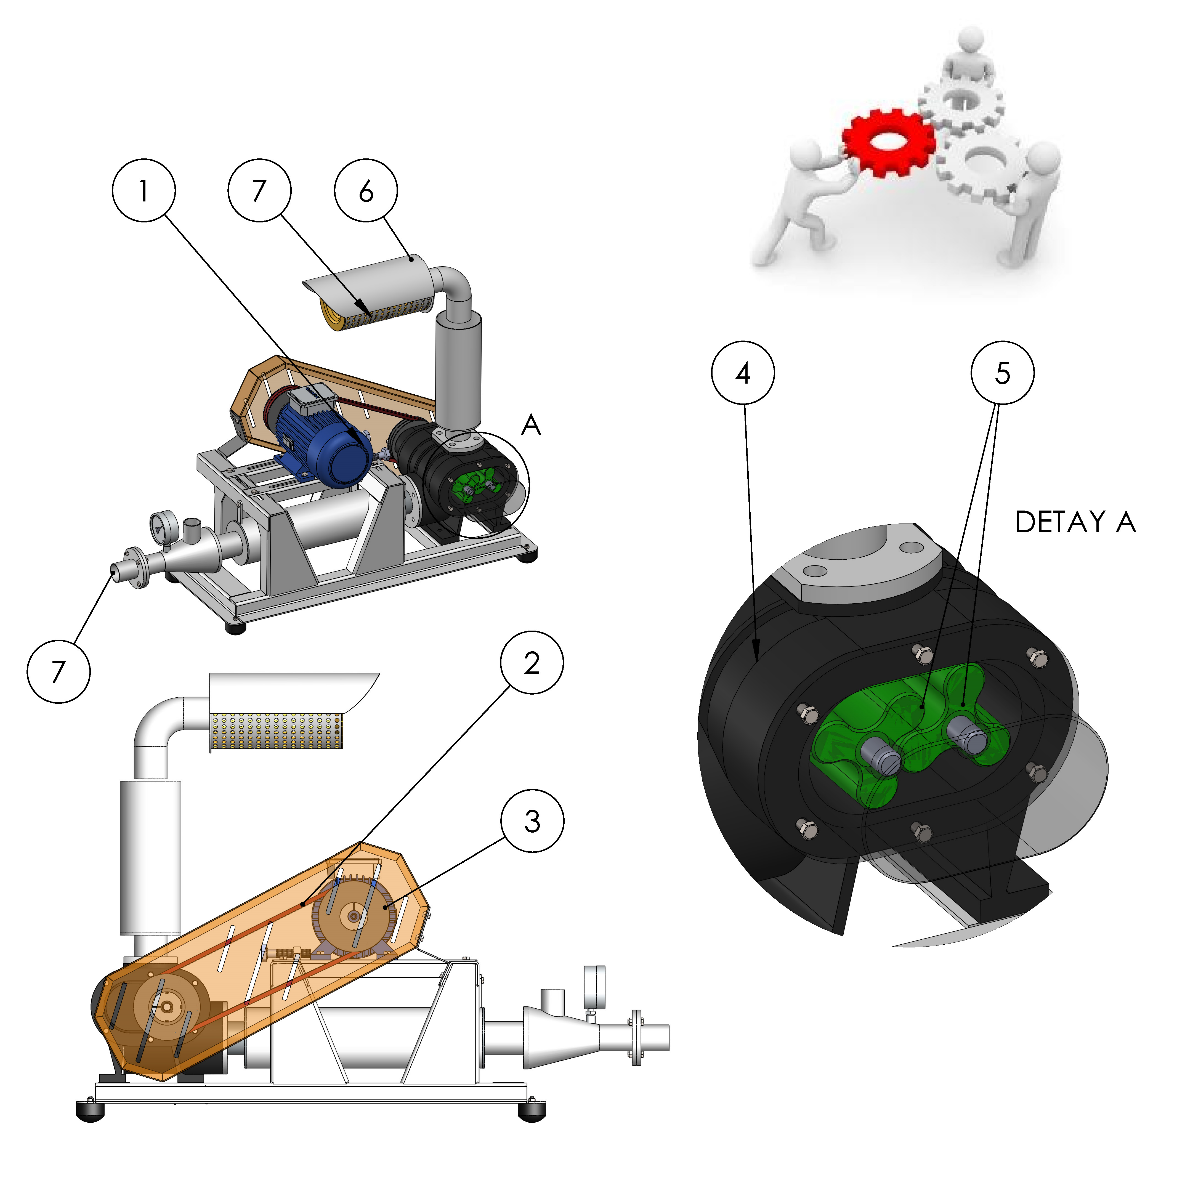 6 E. TEKNİK ÖZELLİKLER Blover makinesinin çalışma prensibi; Blover motordan(1) aldığı hareket ile kayış(2) kasnaklar(3) vasıtasıyla döküm gövde(4) içerisinde rulmanlarla yataklanmış birbirine ters